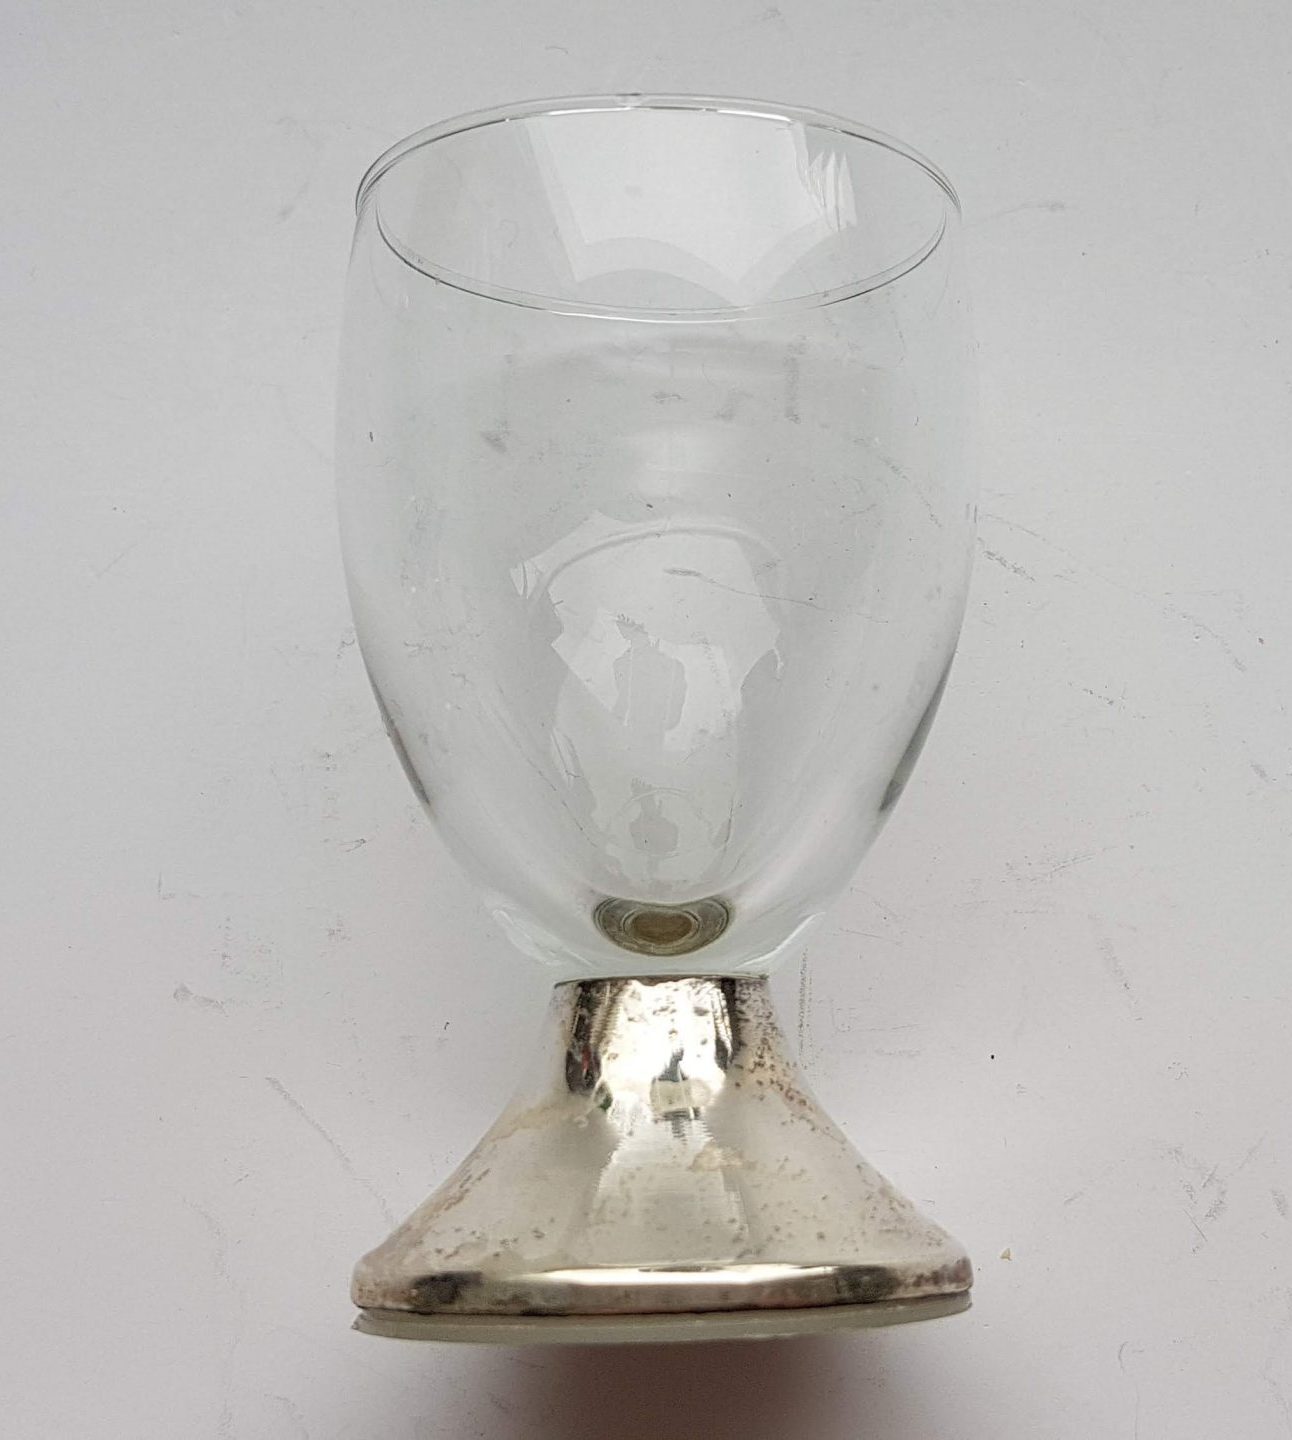 Verenigde Staten van Amerika Installatie wedstrijd Dorgento. Glazen met zilveren voet. Met zilvermerk in rand. 3 Borrel  glazen. Per set van 3 🌺 Vintage Webshop SennaBenna